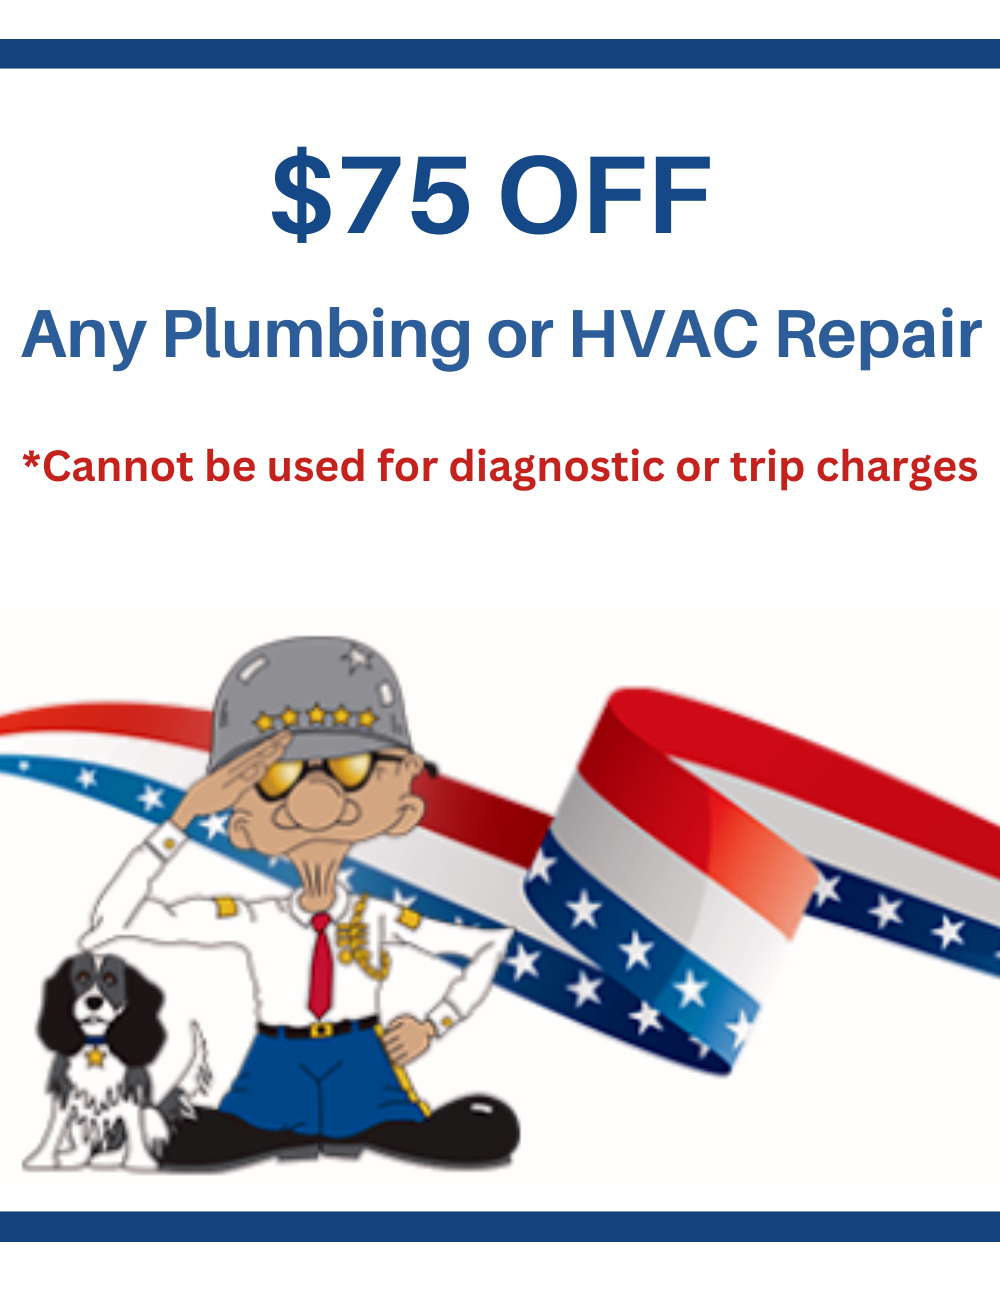 $75 OFF Plumbing or HVAC Repair General